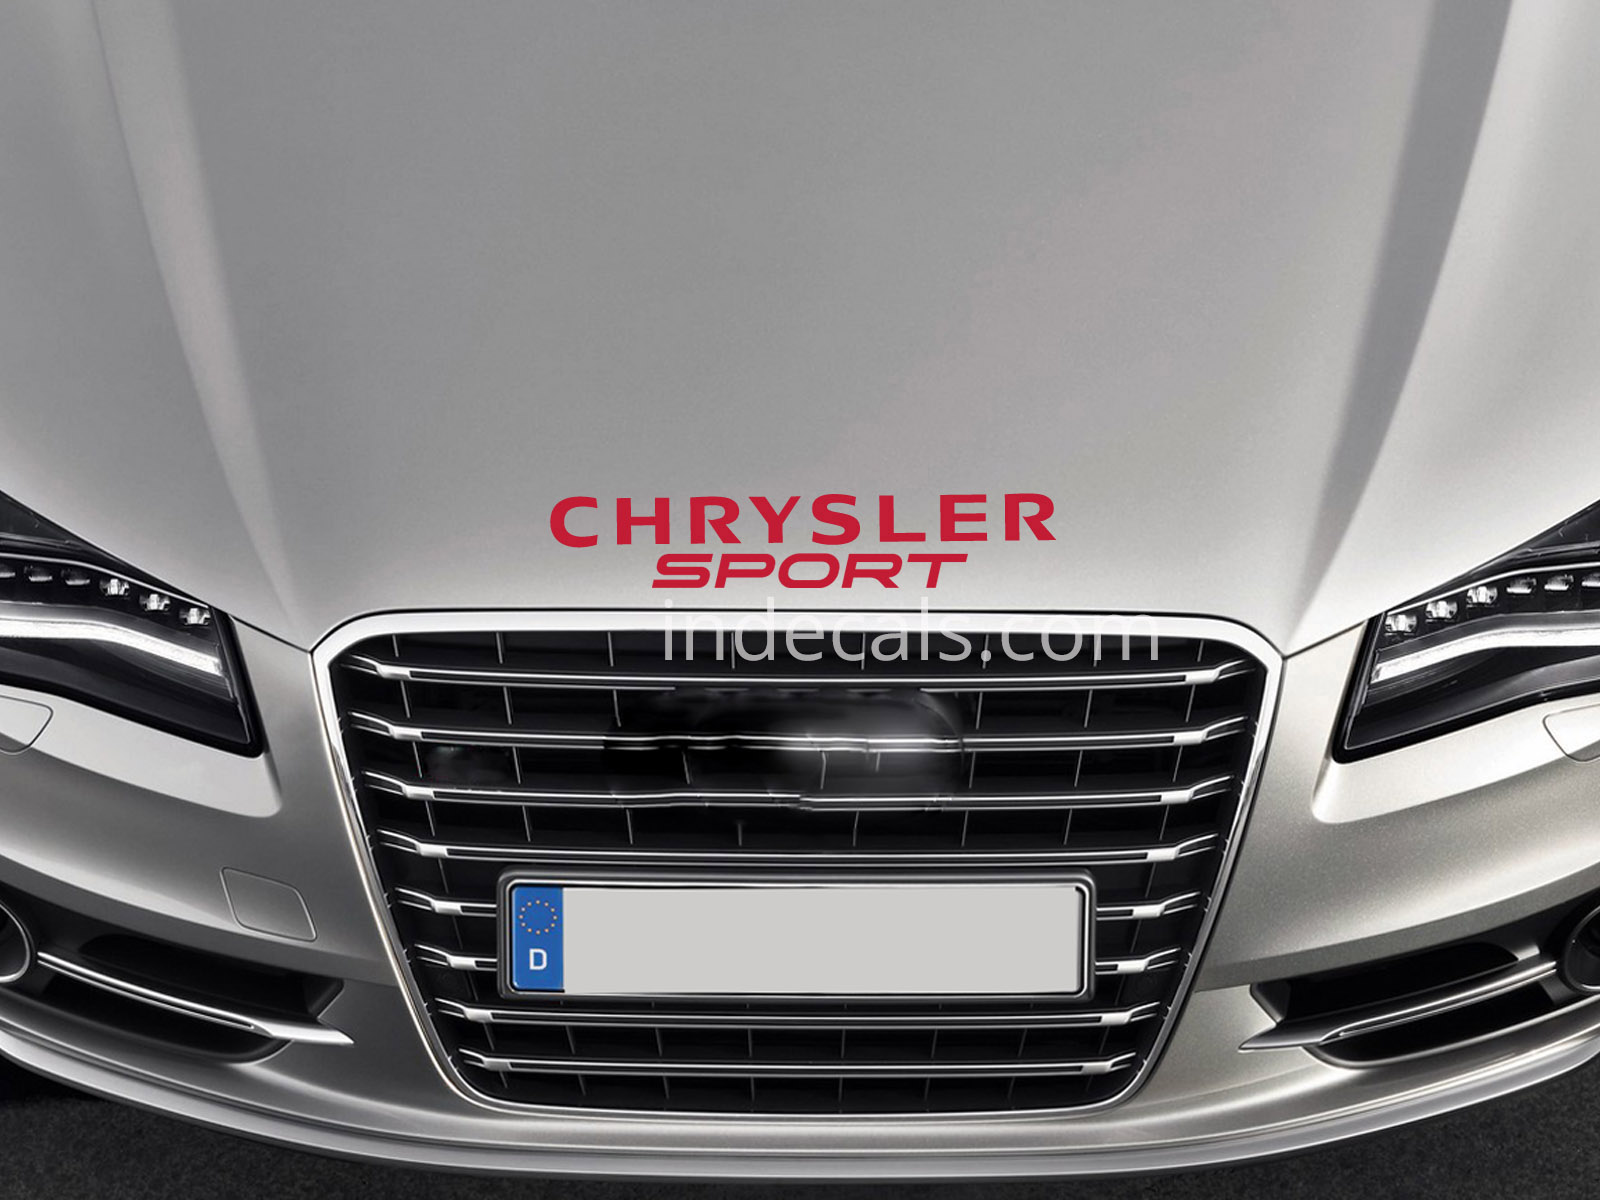 1 x Chrysler Sport Sticker for Bonnet - Red